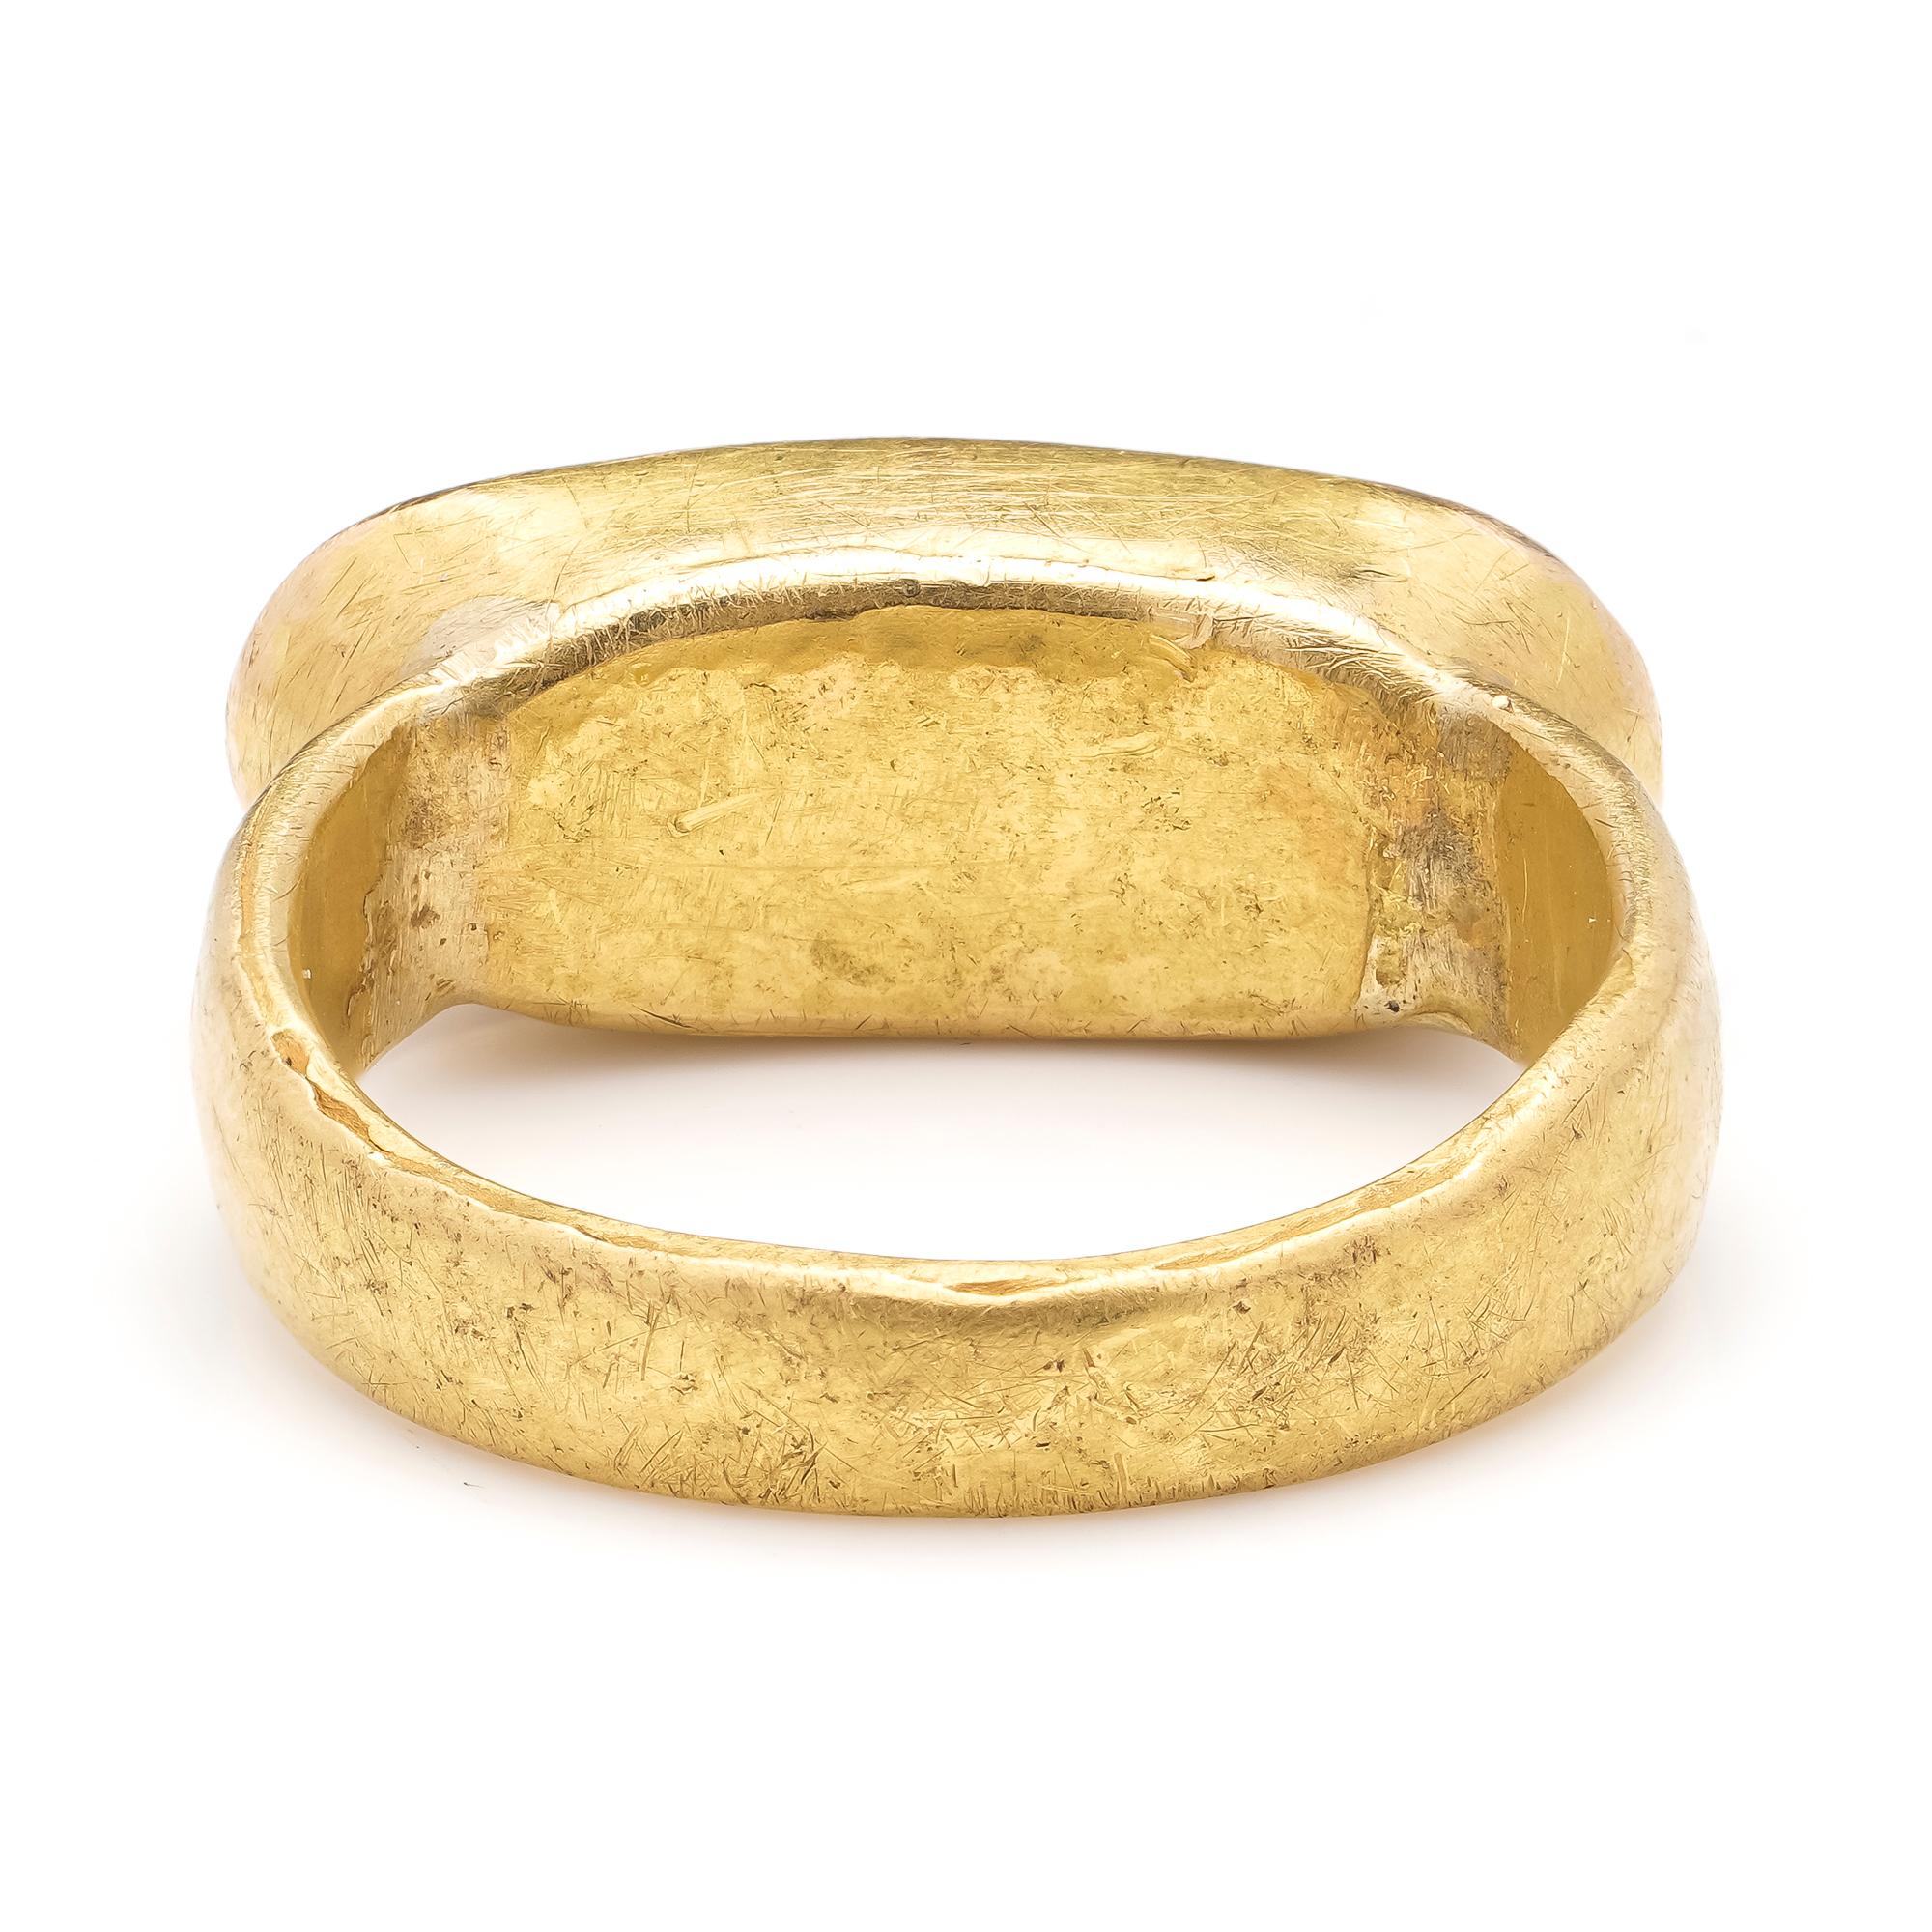 21 karat gold ring